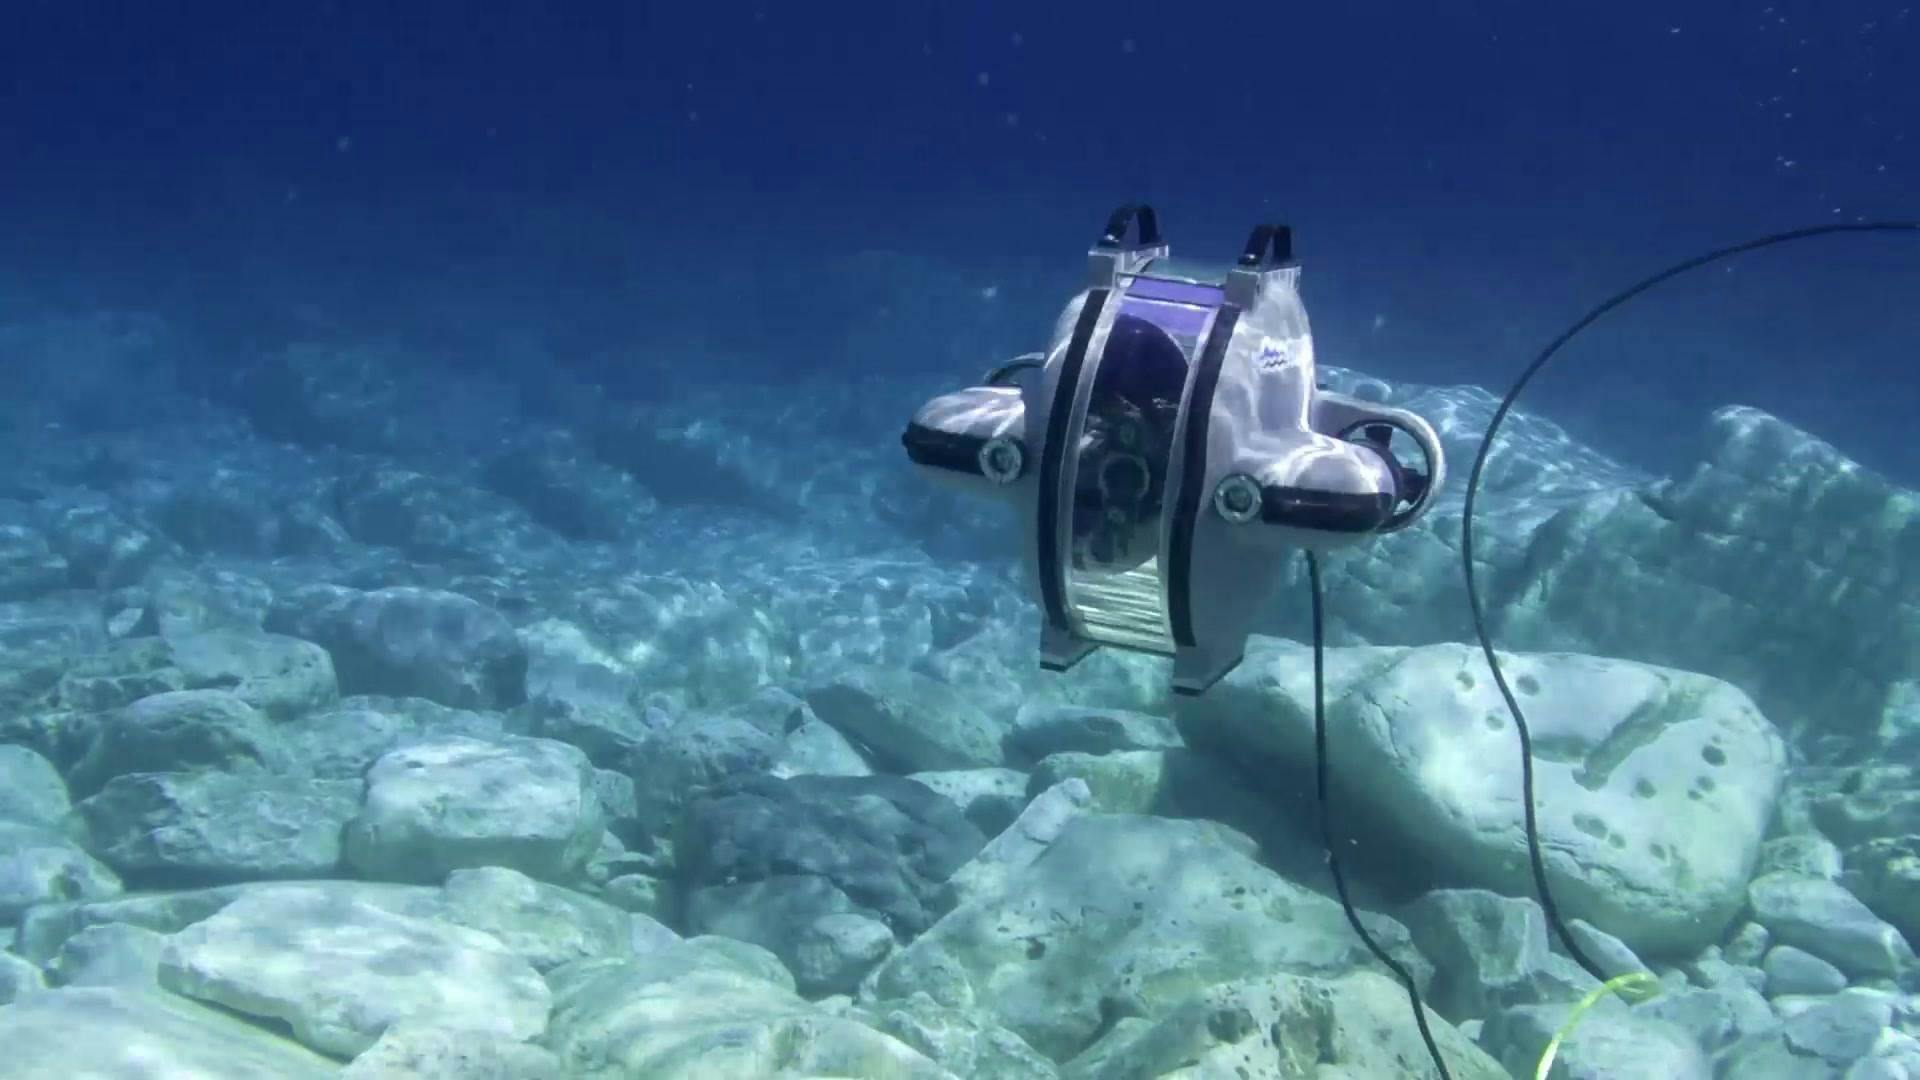 Underwater image of Deep Trekker DTG3 ROV swimming over big rocks in clear, blue water